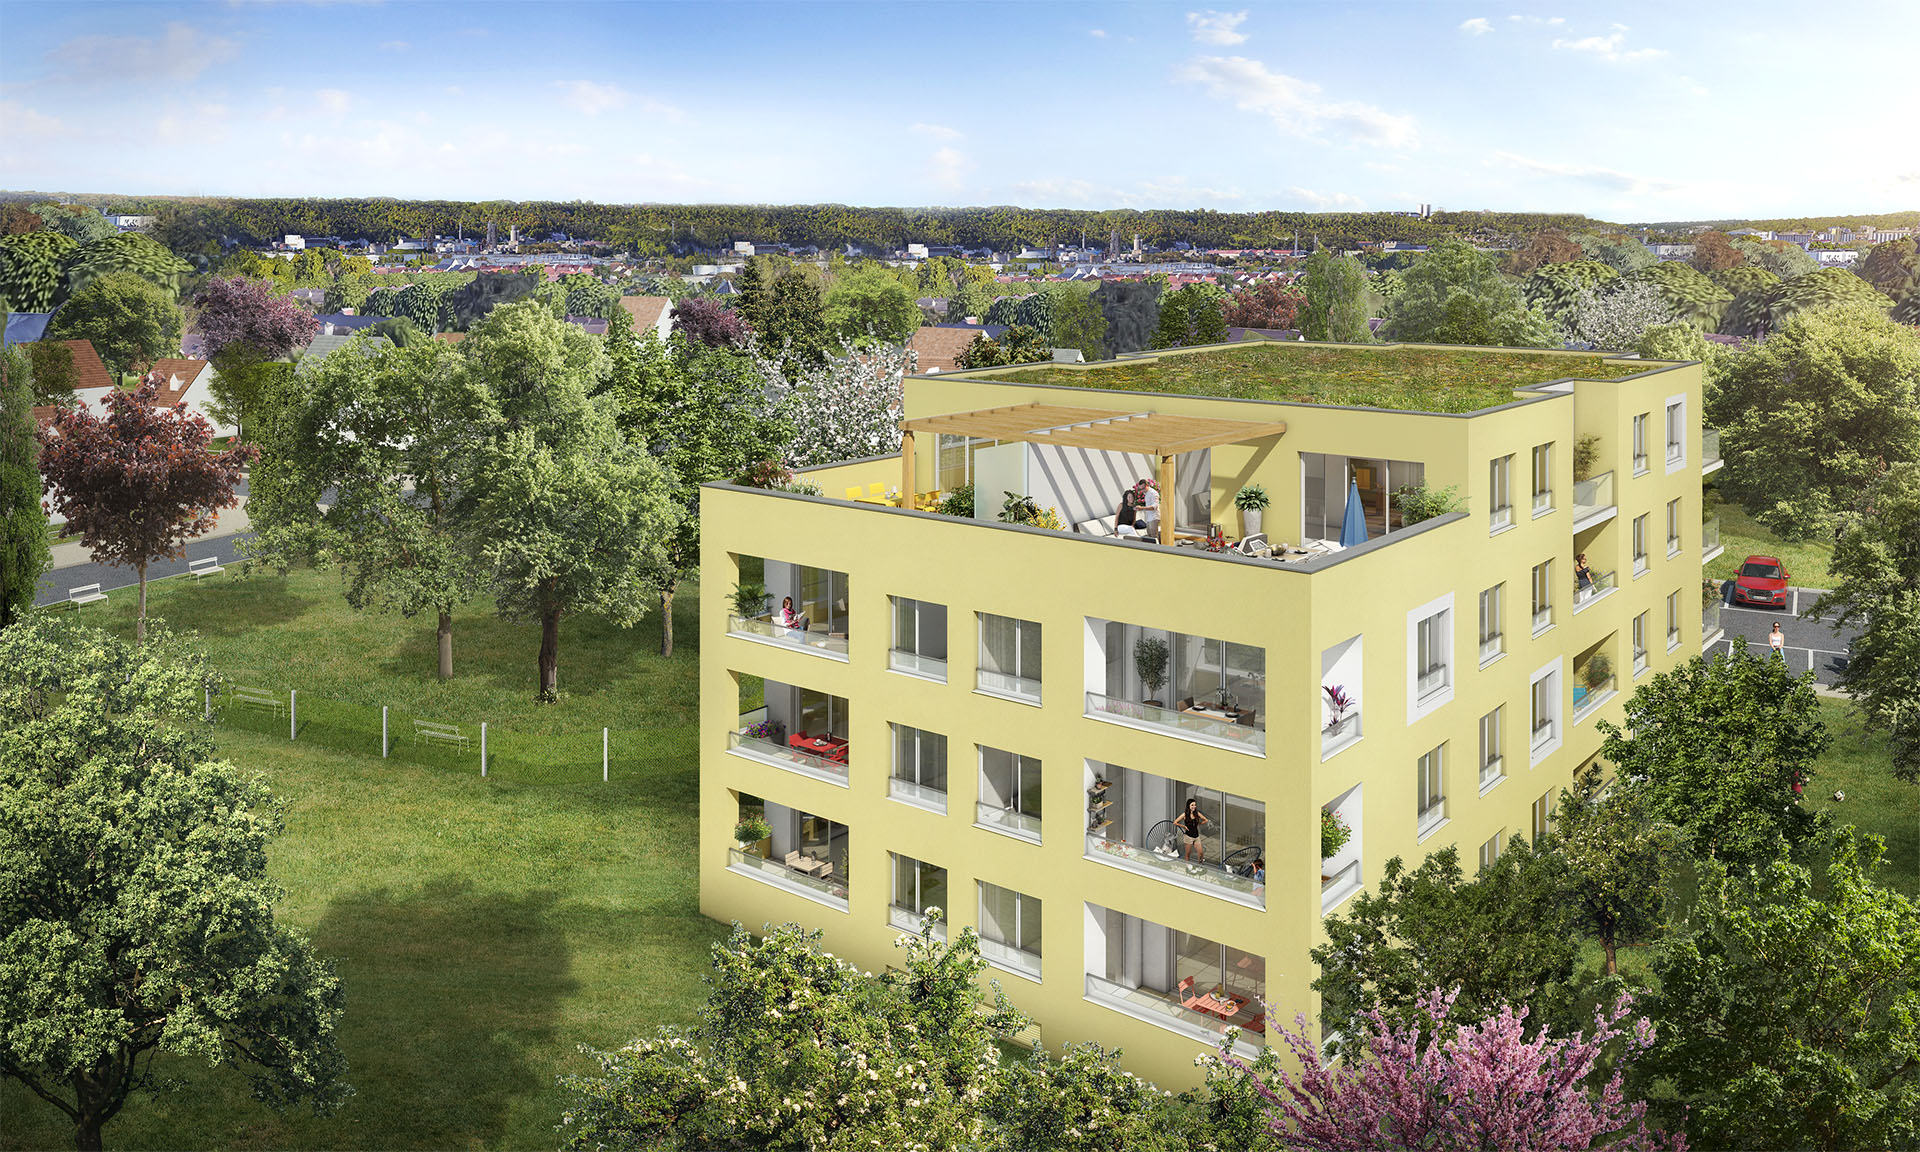 residence neuve aquarelle-appartements neufs rouen-t2 t3 t4-investissement immobilier rouen